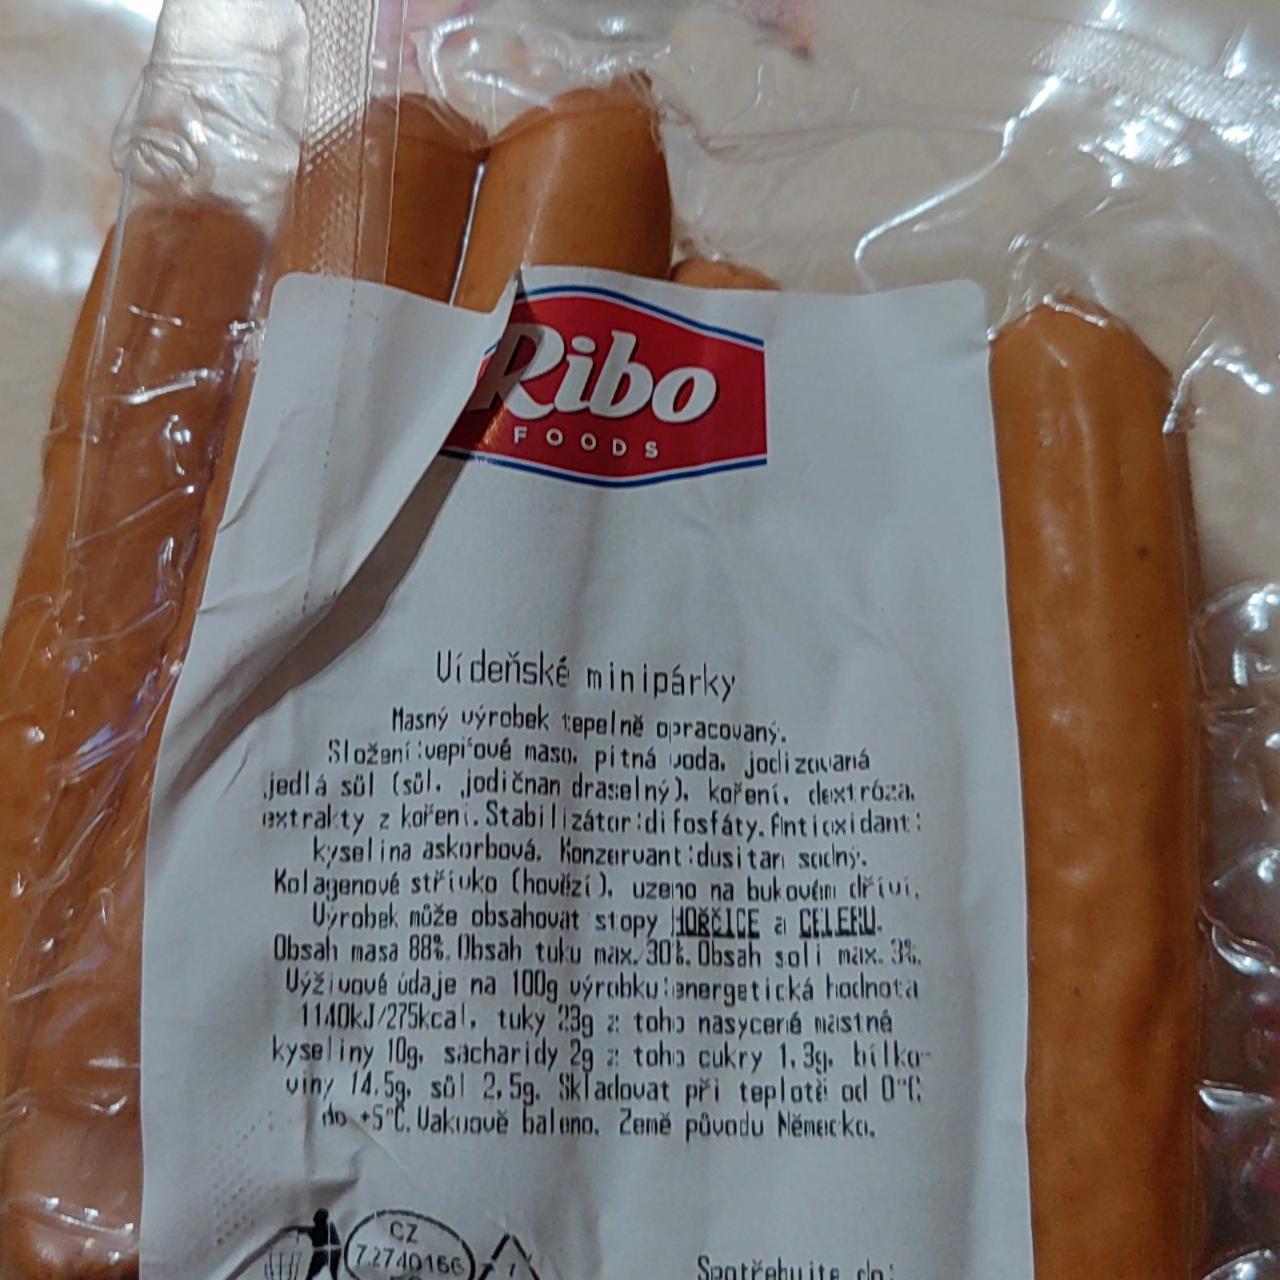 Fotografie - Vídeňské minipárky Ribo foods